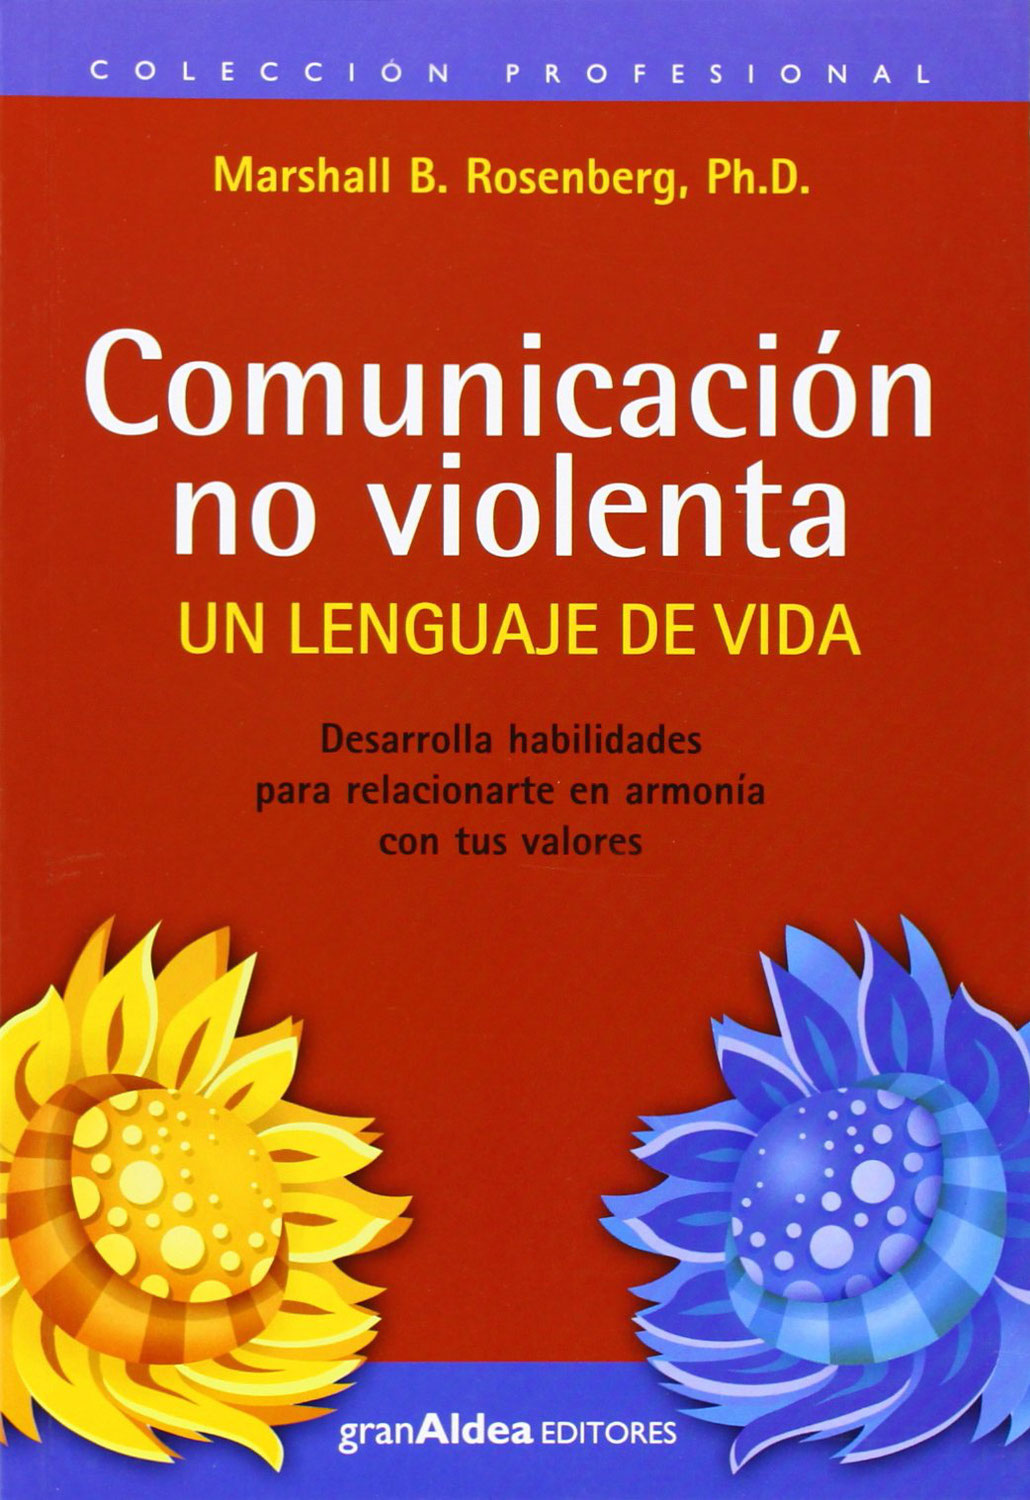 La comunicación no violenta en acción